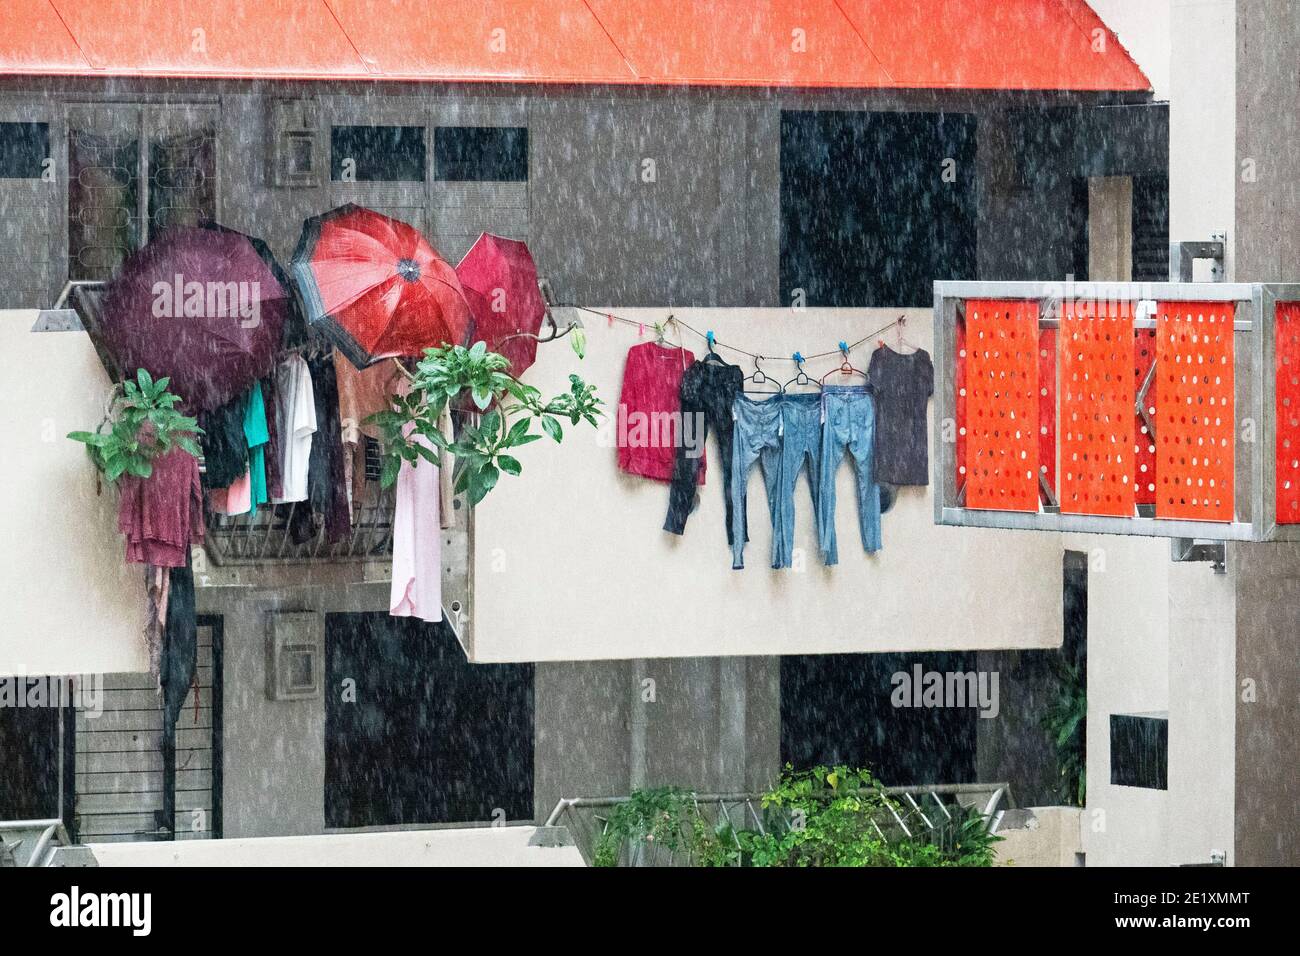 Singapour. 10 janvier 2021. La lessive est visible à l'extérieur du couloir d'un domaine de logement dans le déversage lourd de Singapour, le 10 janvier 2021. Crédit: Puis Chih Wey/Xinhua/Alay Live News Banque D'Images